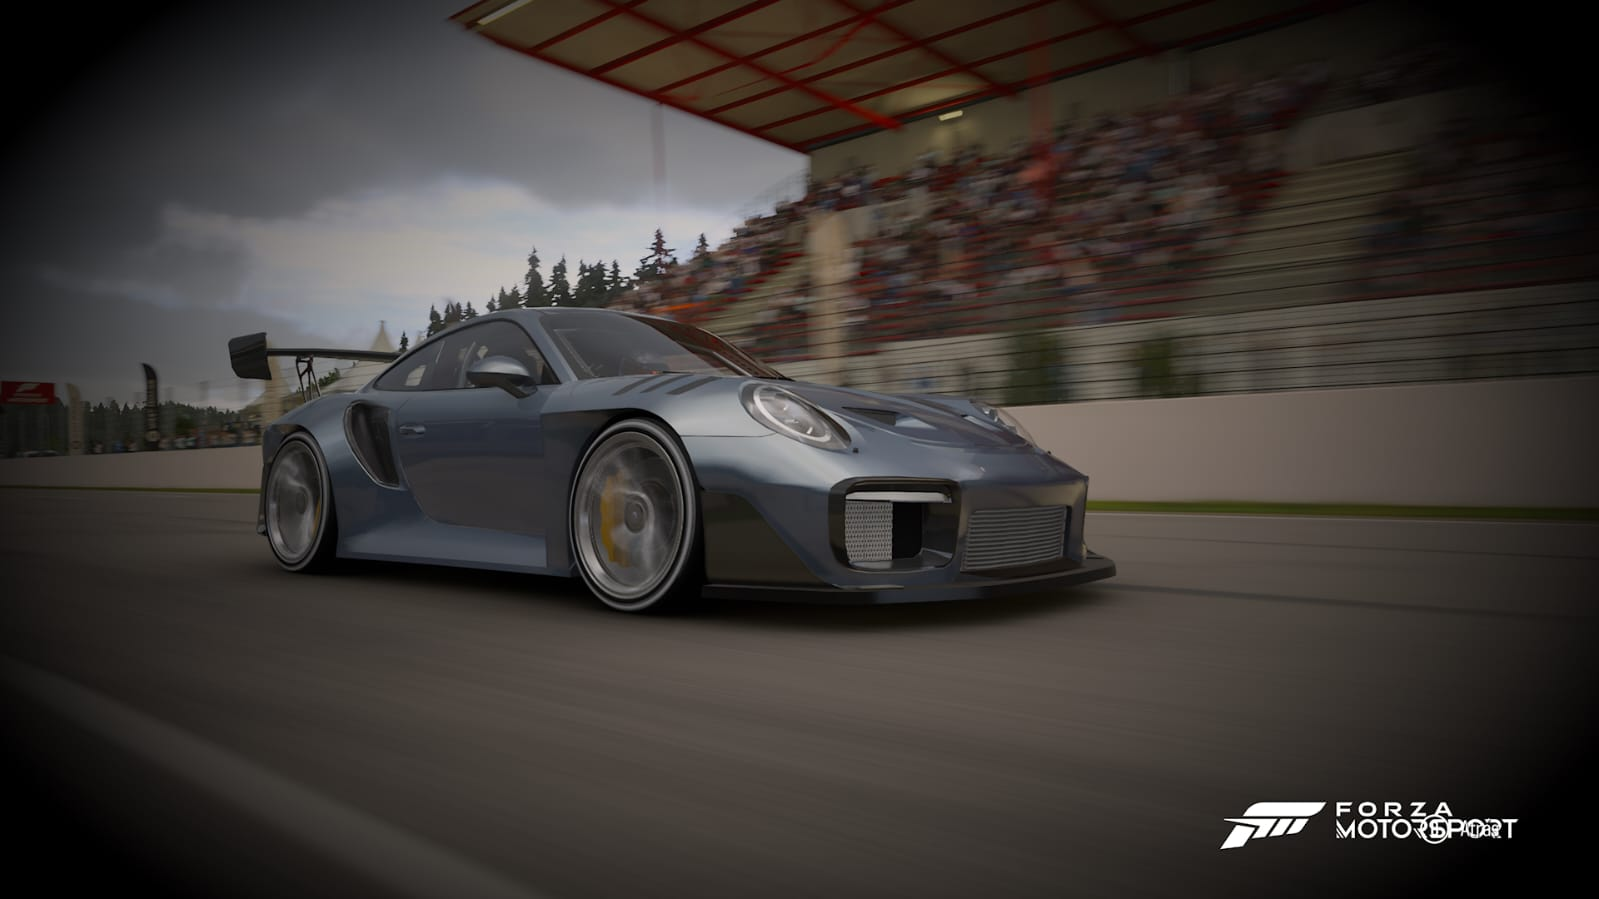 Forza Motorsport, un exclusivo renovado a toda velocidad 21